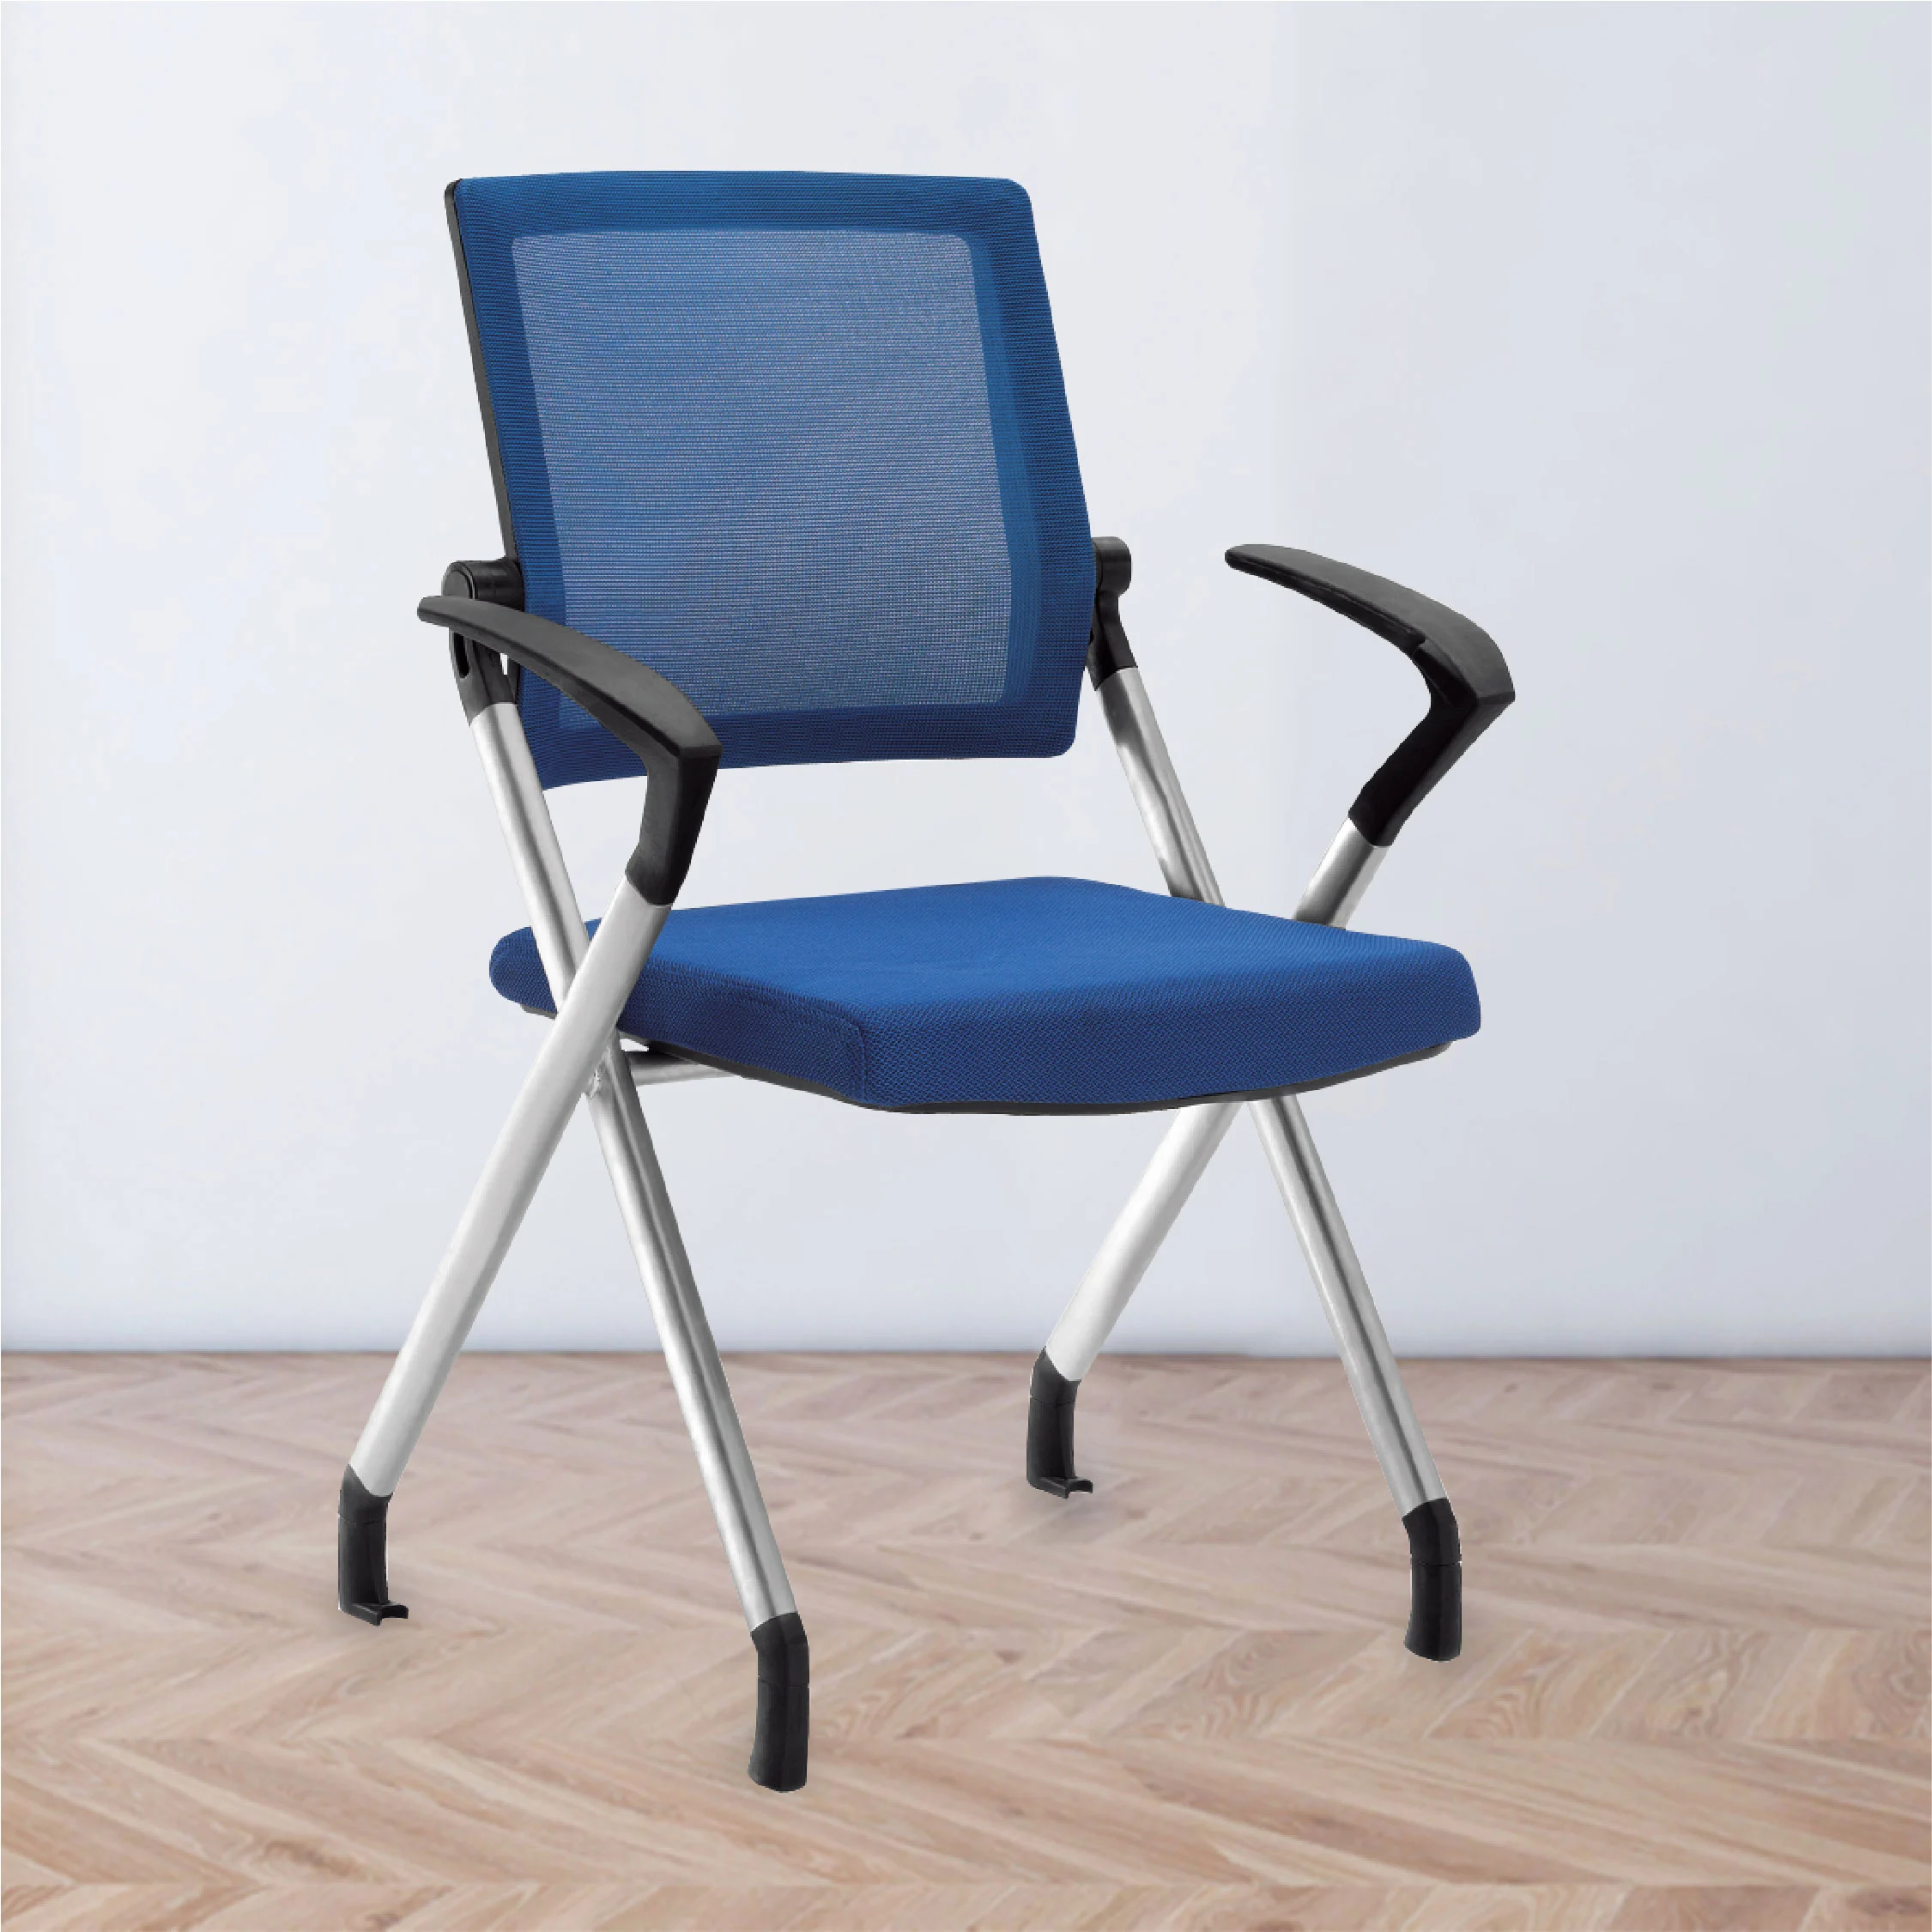 Multiuse chair blue